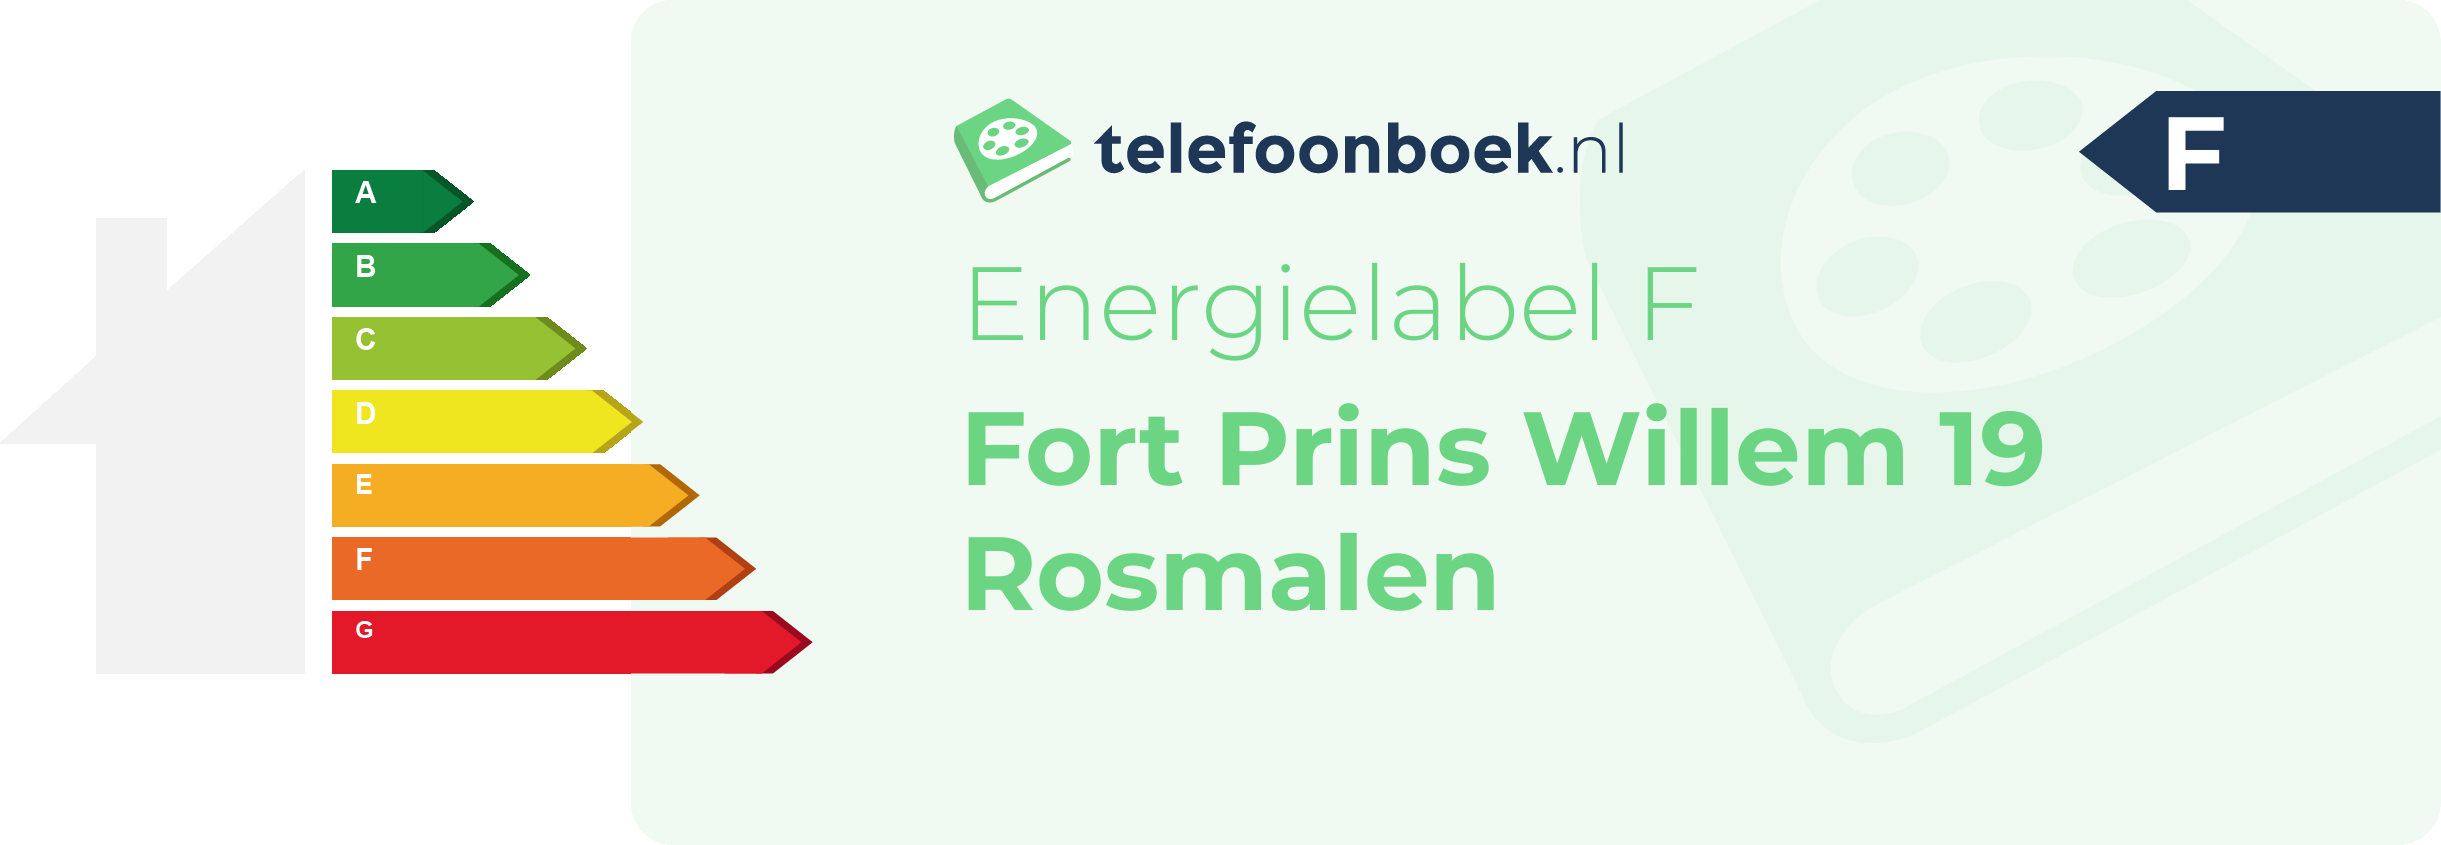 Energielabel Fort Prins Willem 19 Rosmalen